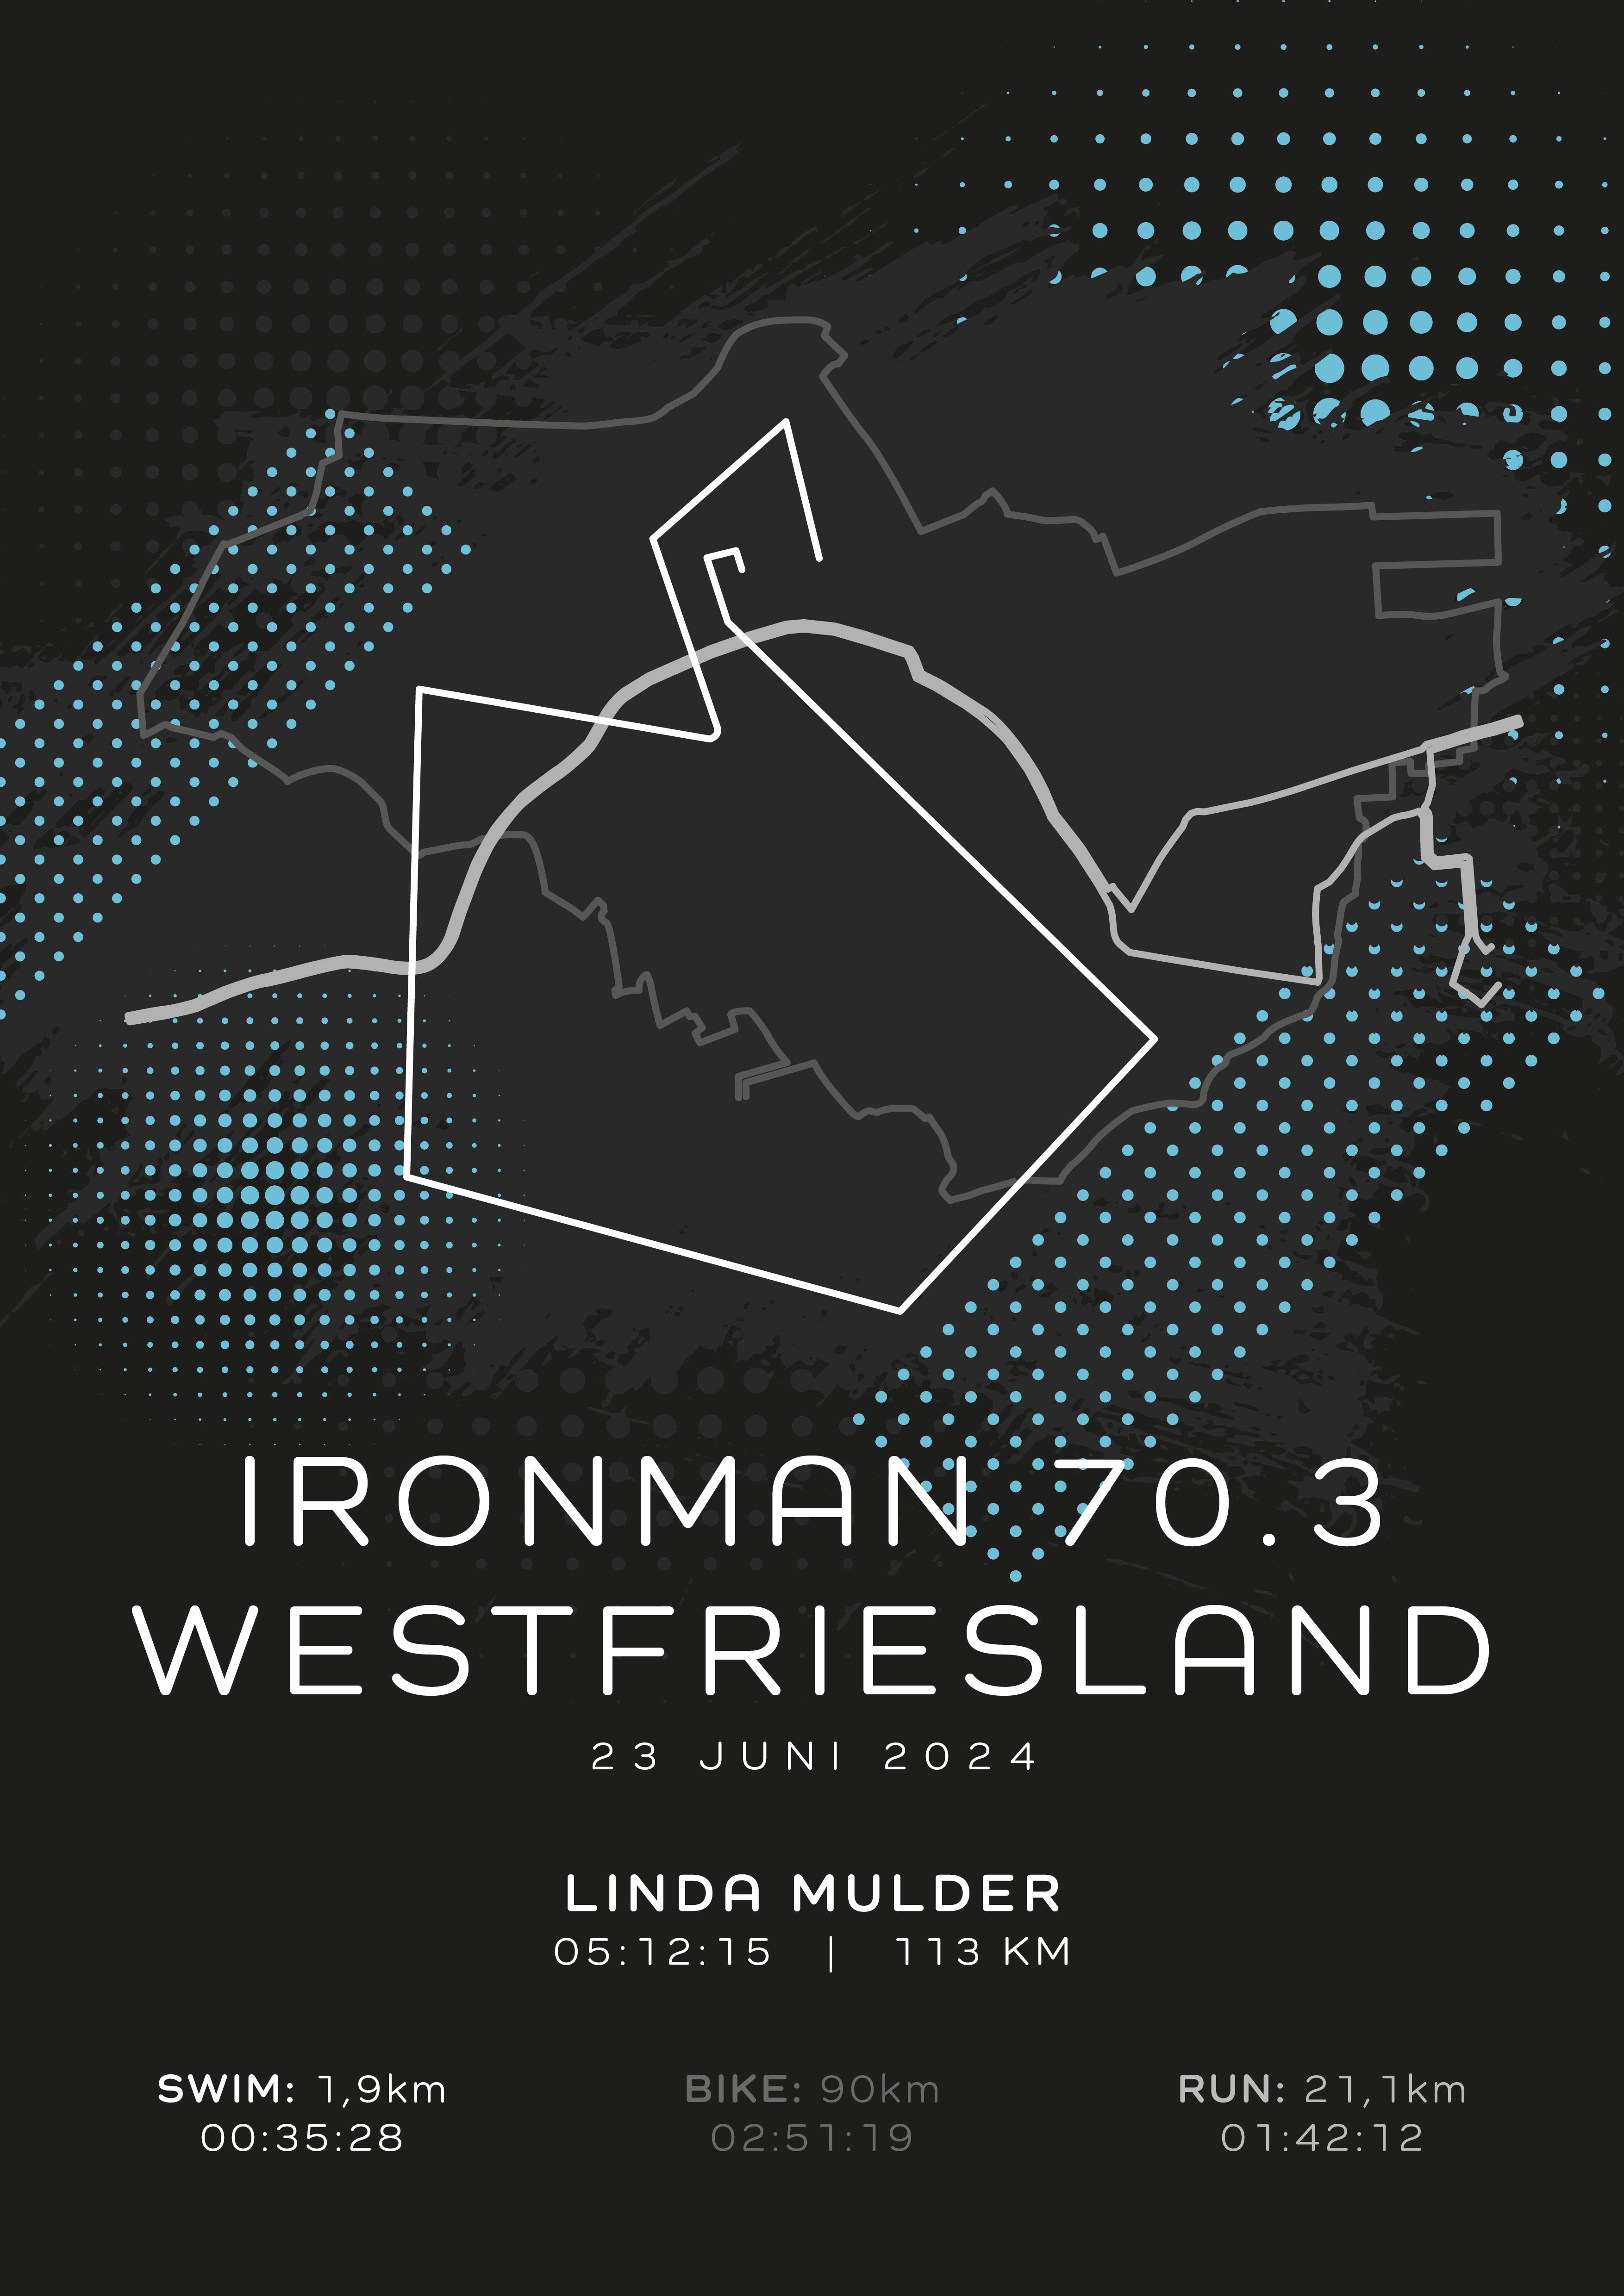 Ironman 70.3 Westfriesland - Modern Dark - Poster